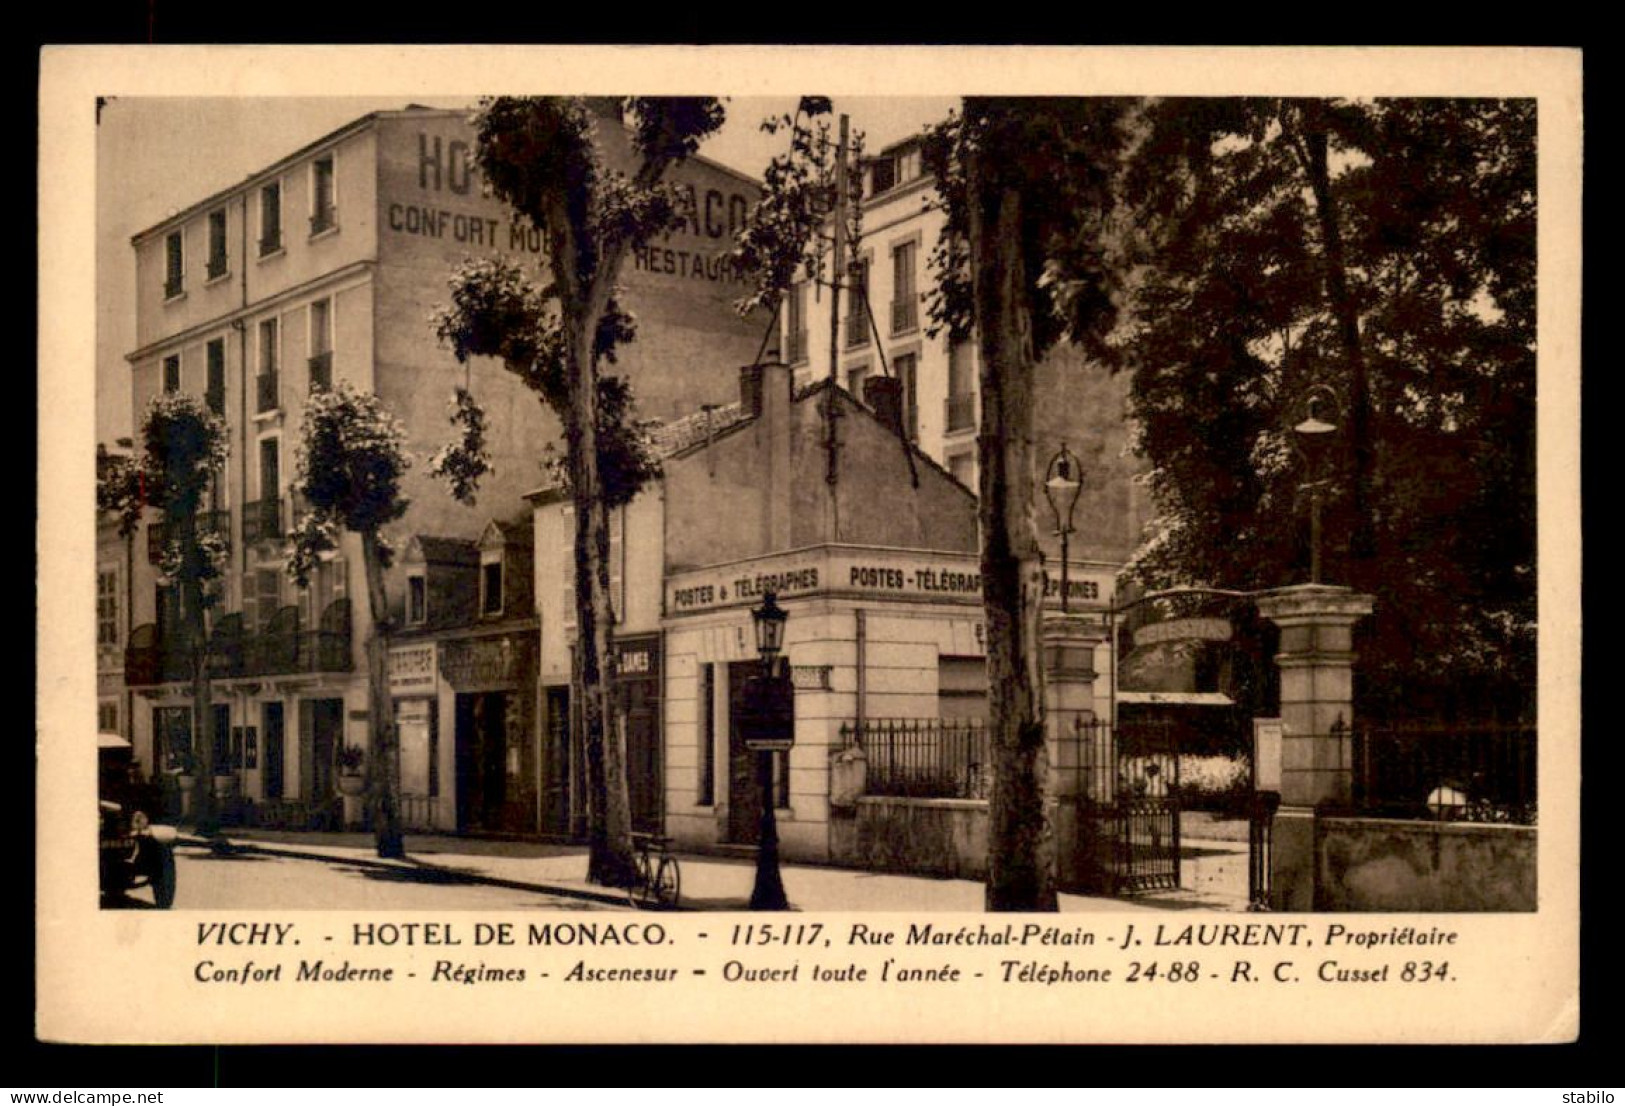 03 - VICHY - HOTEL DE MONACO, 115-117 RUE DU MARECHAL PETAIN - J. LAURENT PROPRIETAIRE - BUREAU DE POSTE - Vichy